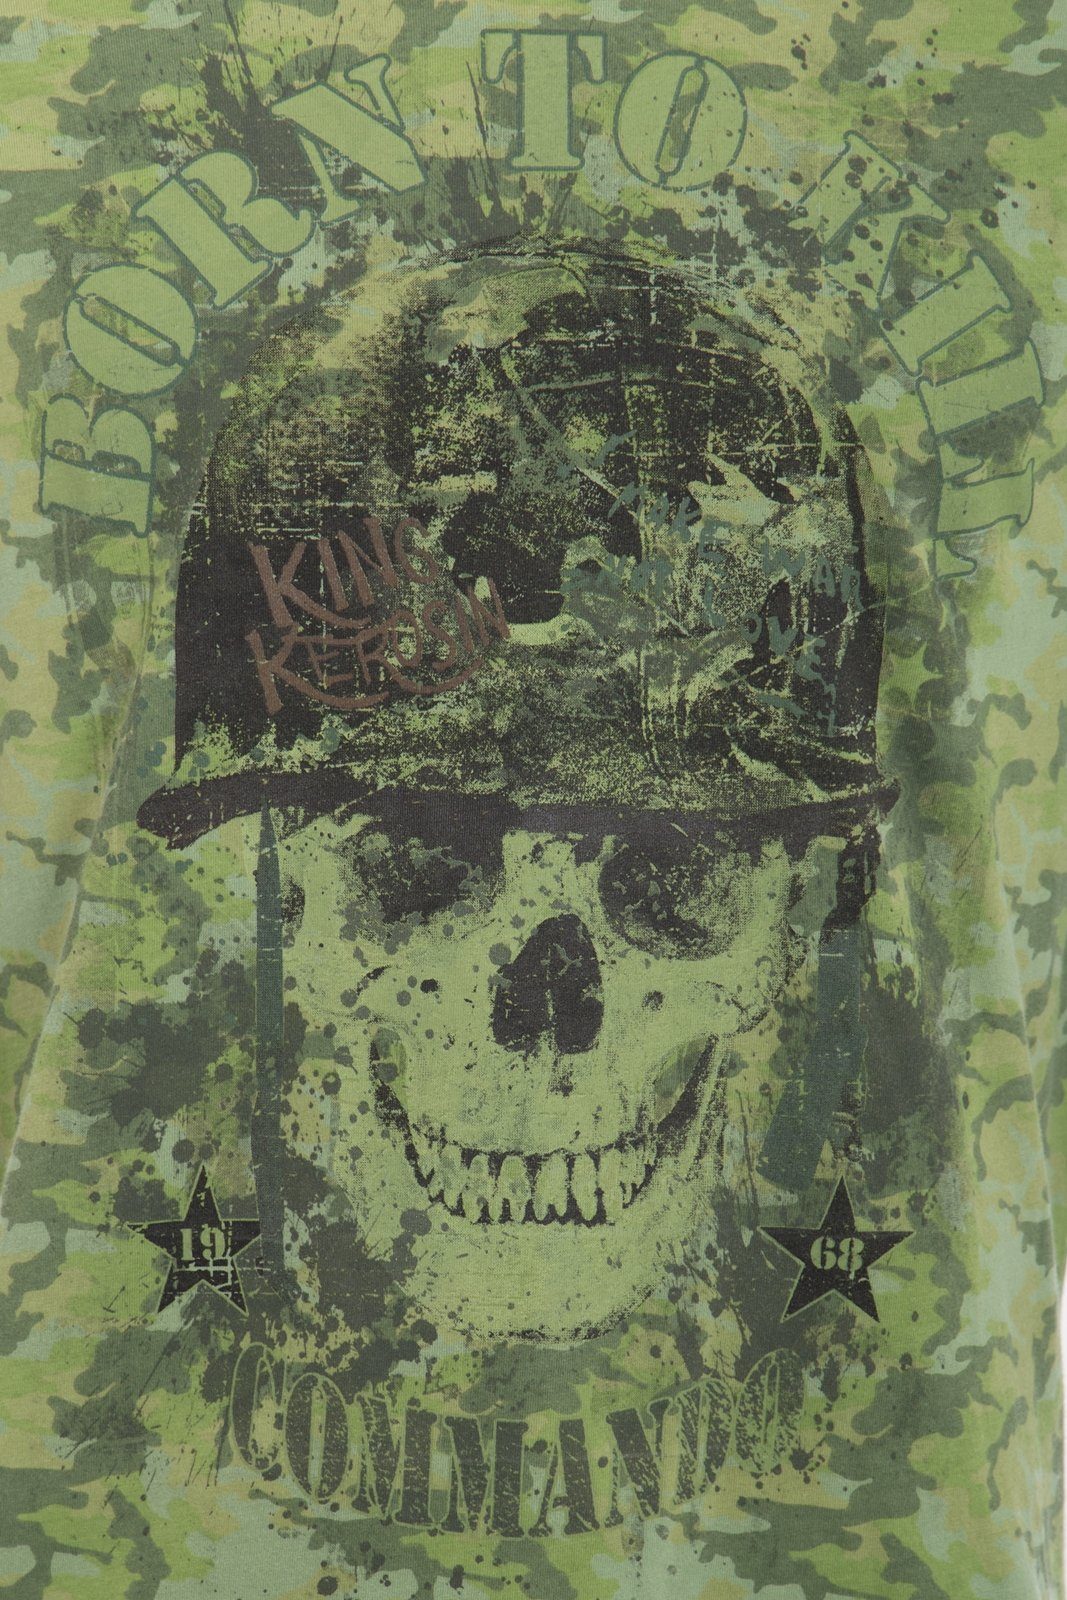 KingKerosin T-Shirt born mit Skull-Motiv to Tarn-Alloverprint und Evergreen kill